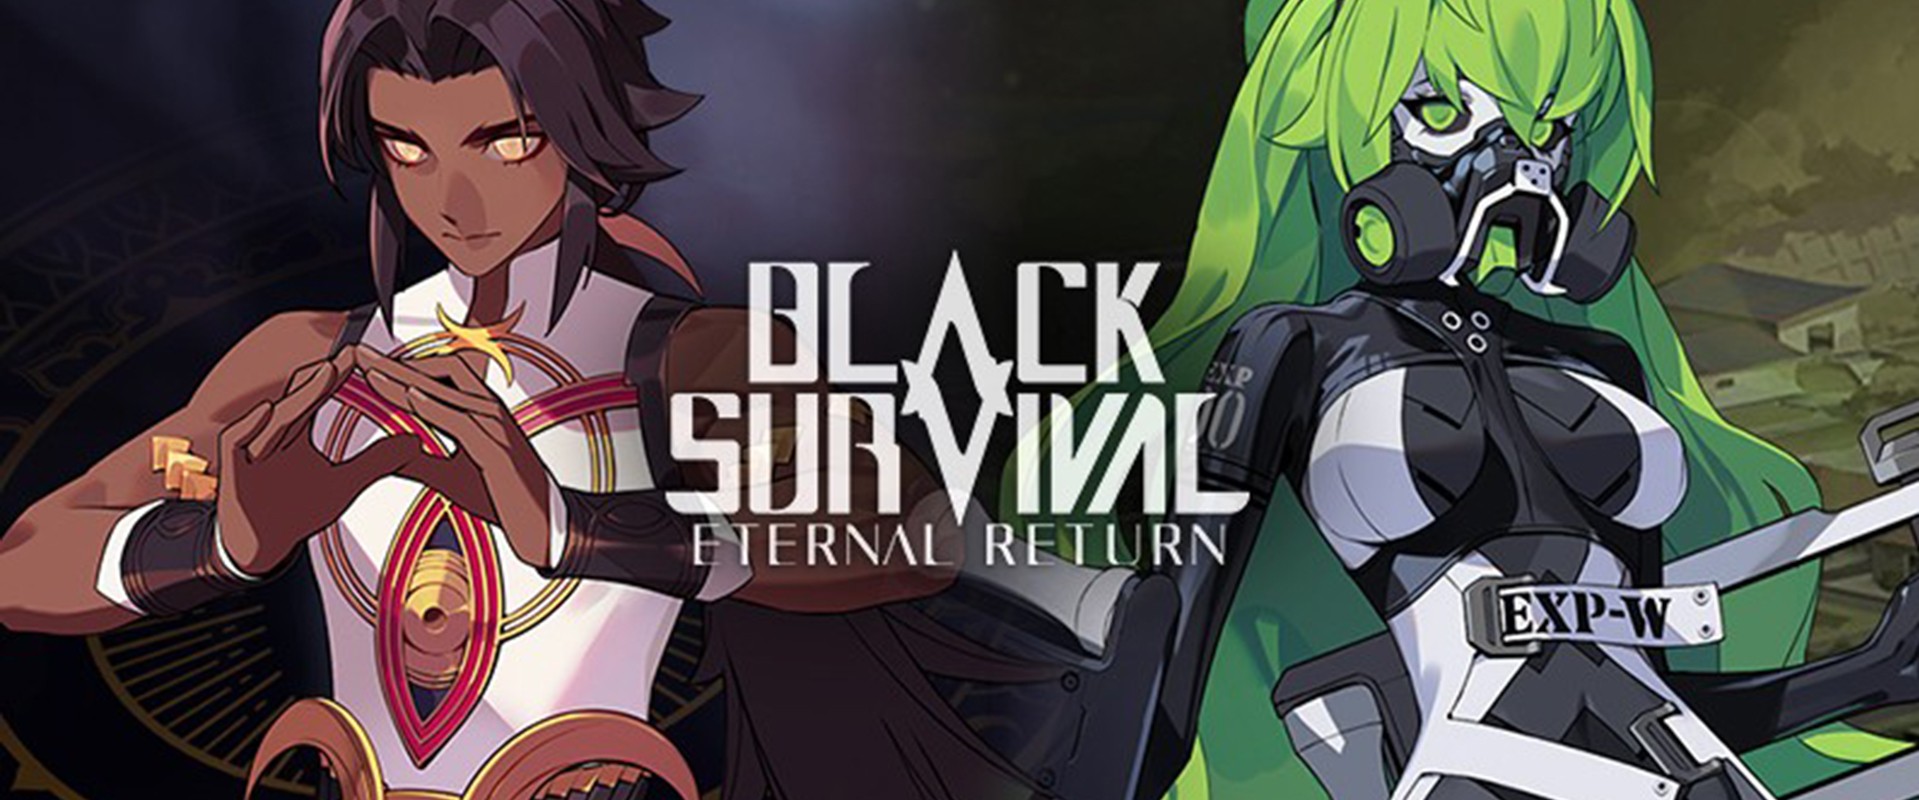 Black Survival : Eternal Return